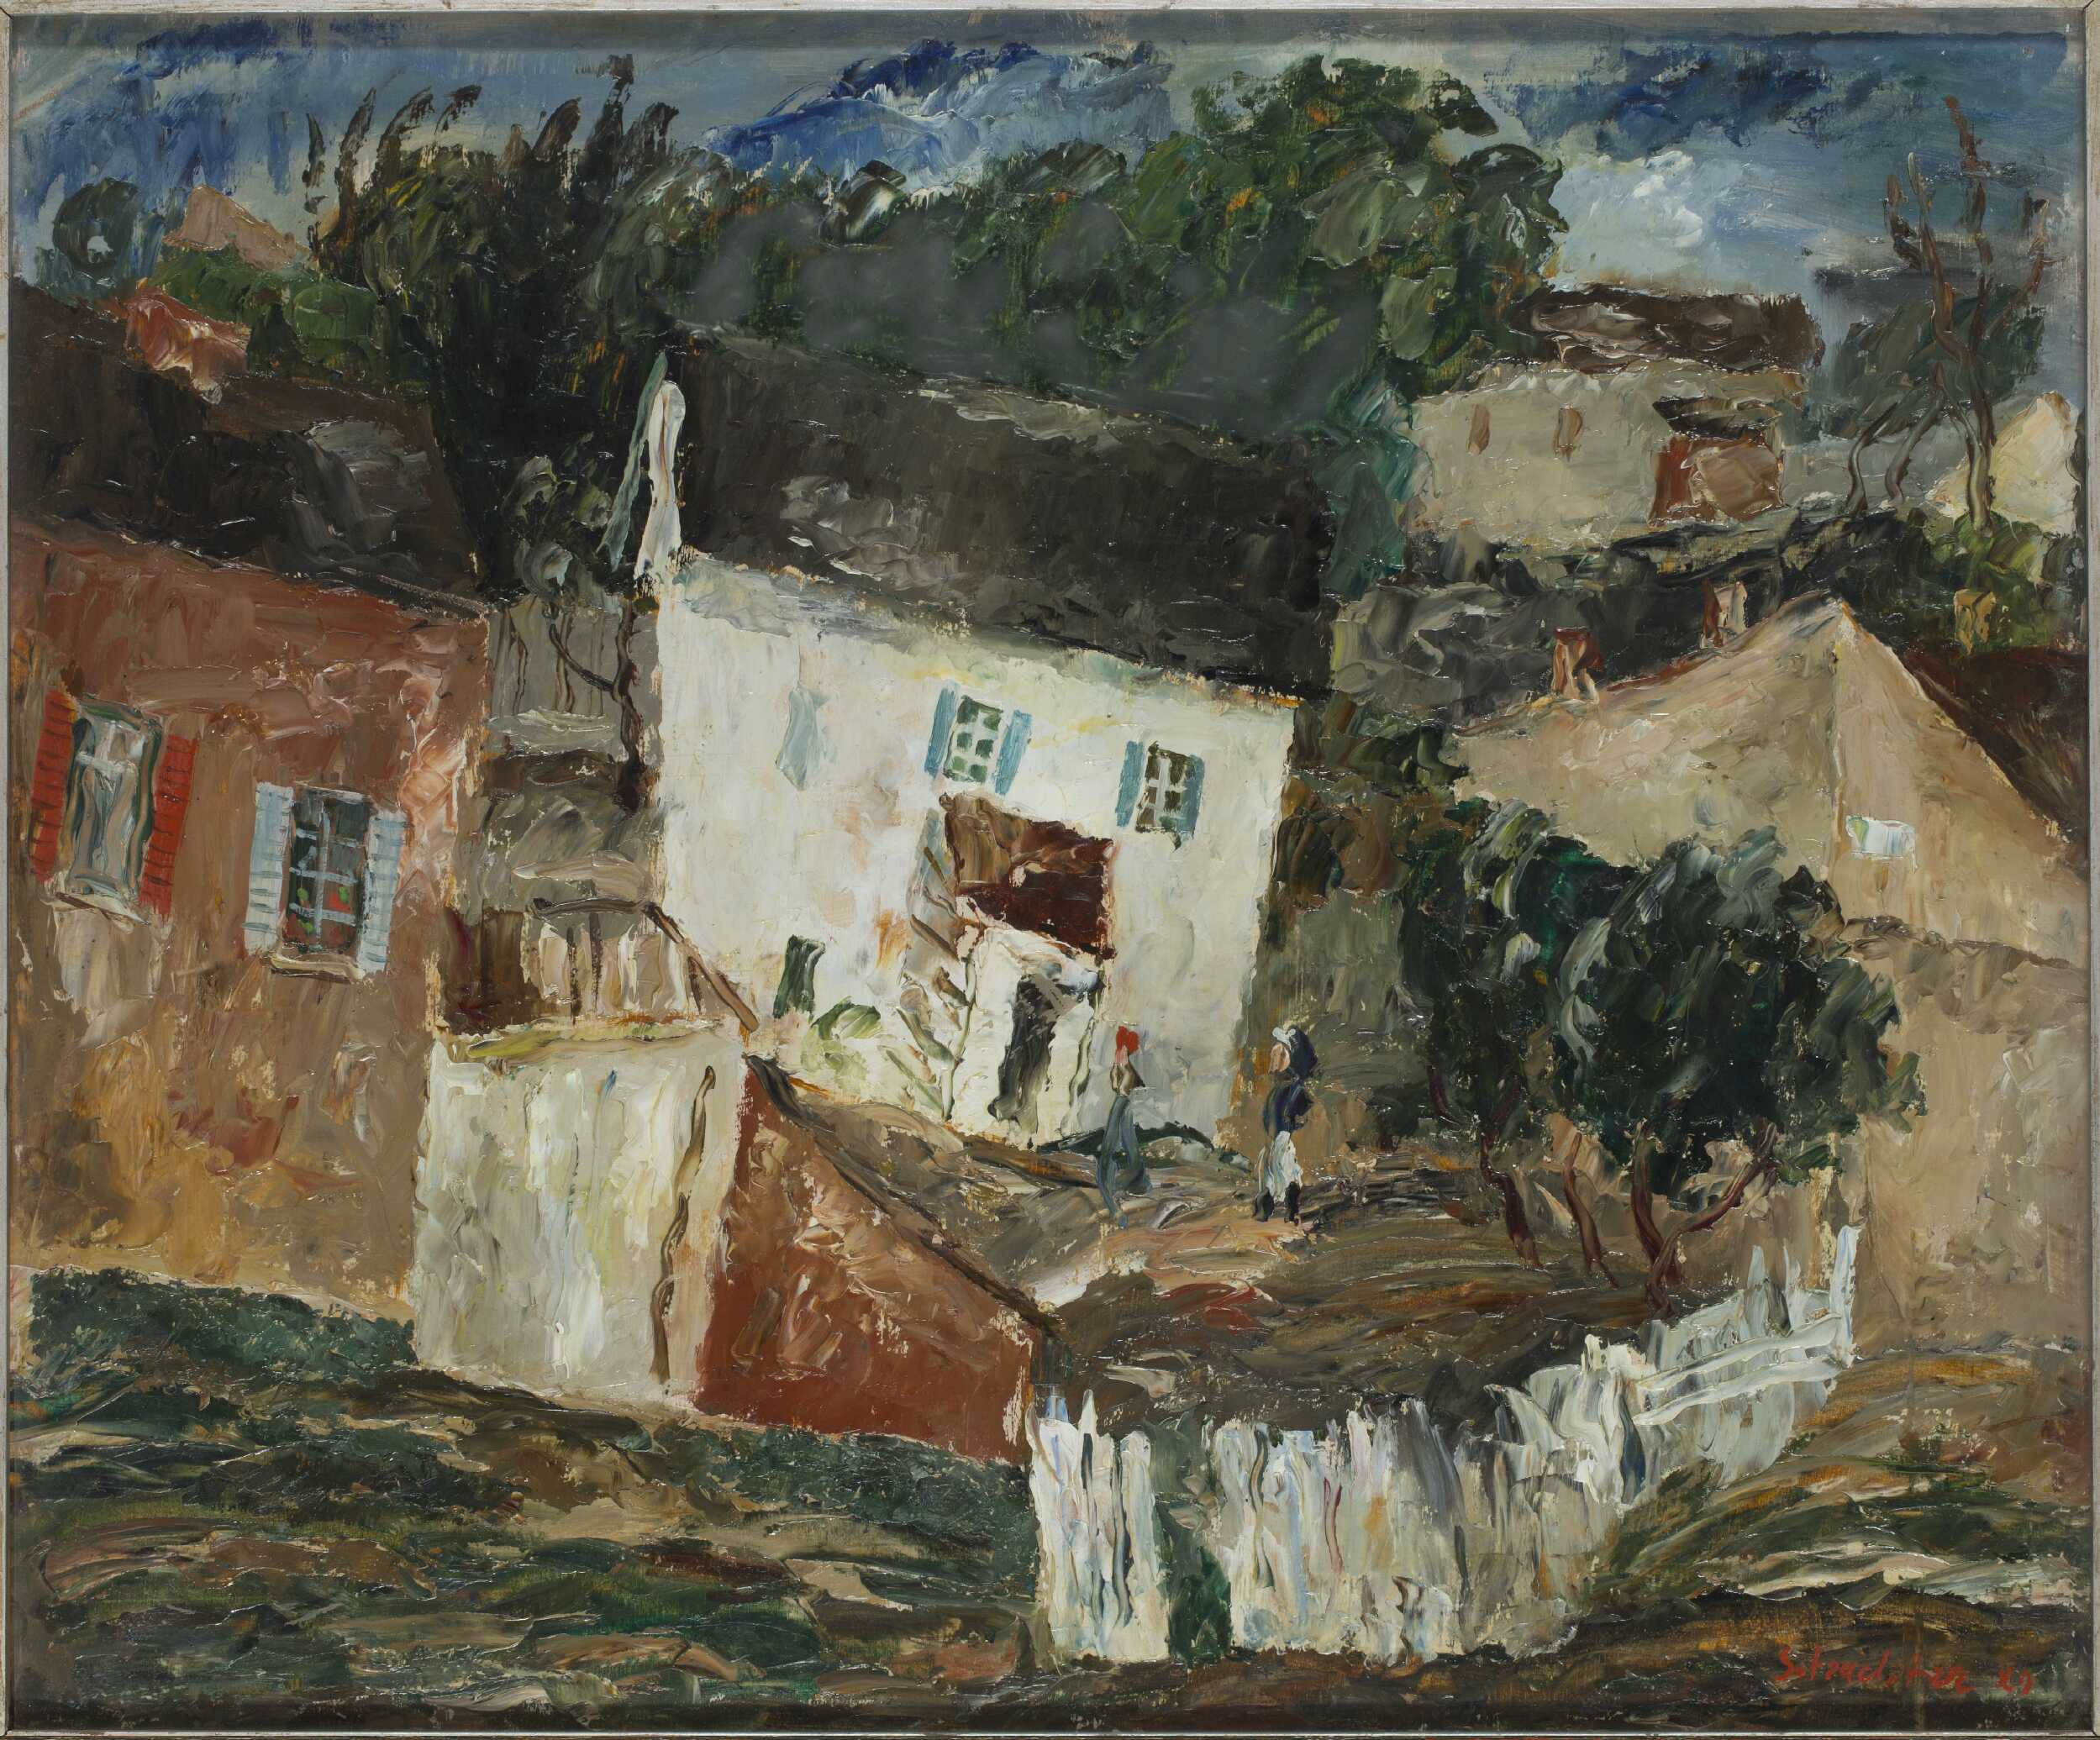 Paysage de Kazimierz Dolny (?) by Symche Trachter - 1929 Institut Historique Juif